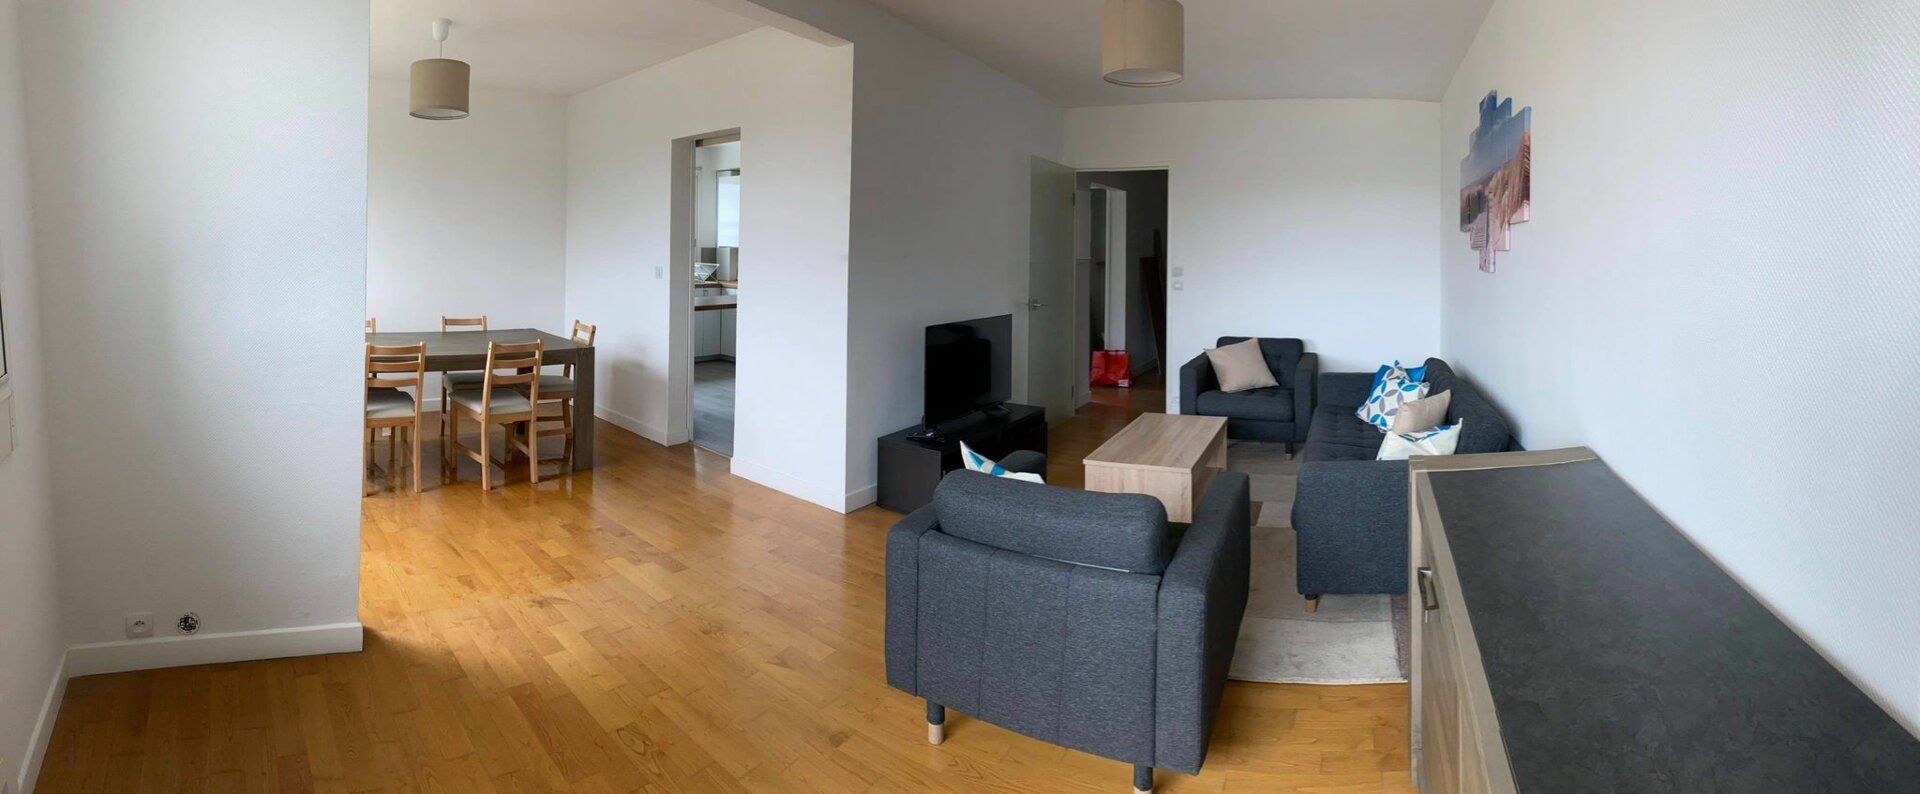 Appartement à vendre 6 128.6m2 à Lorient vignette-16